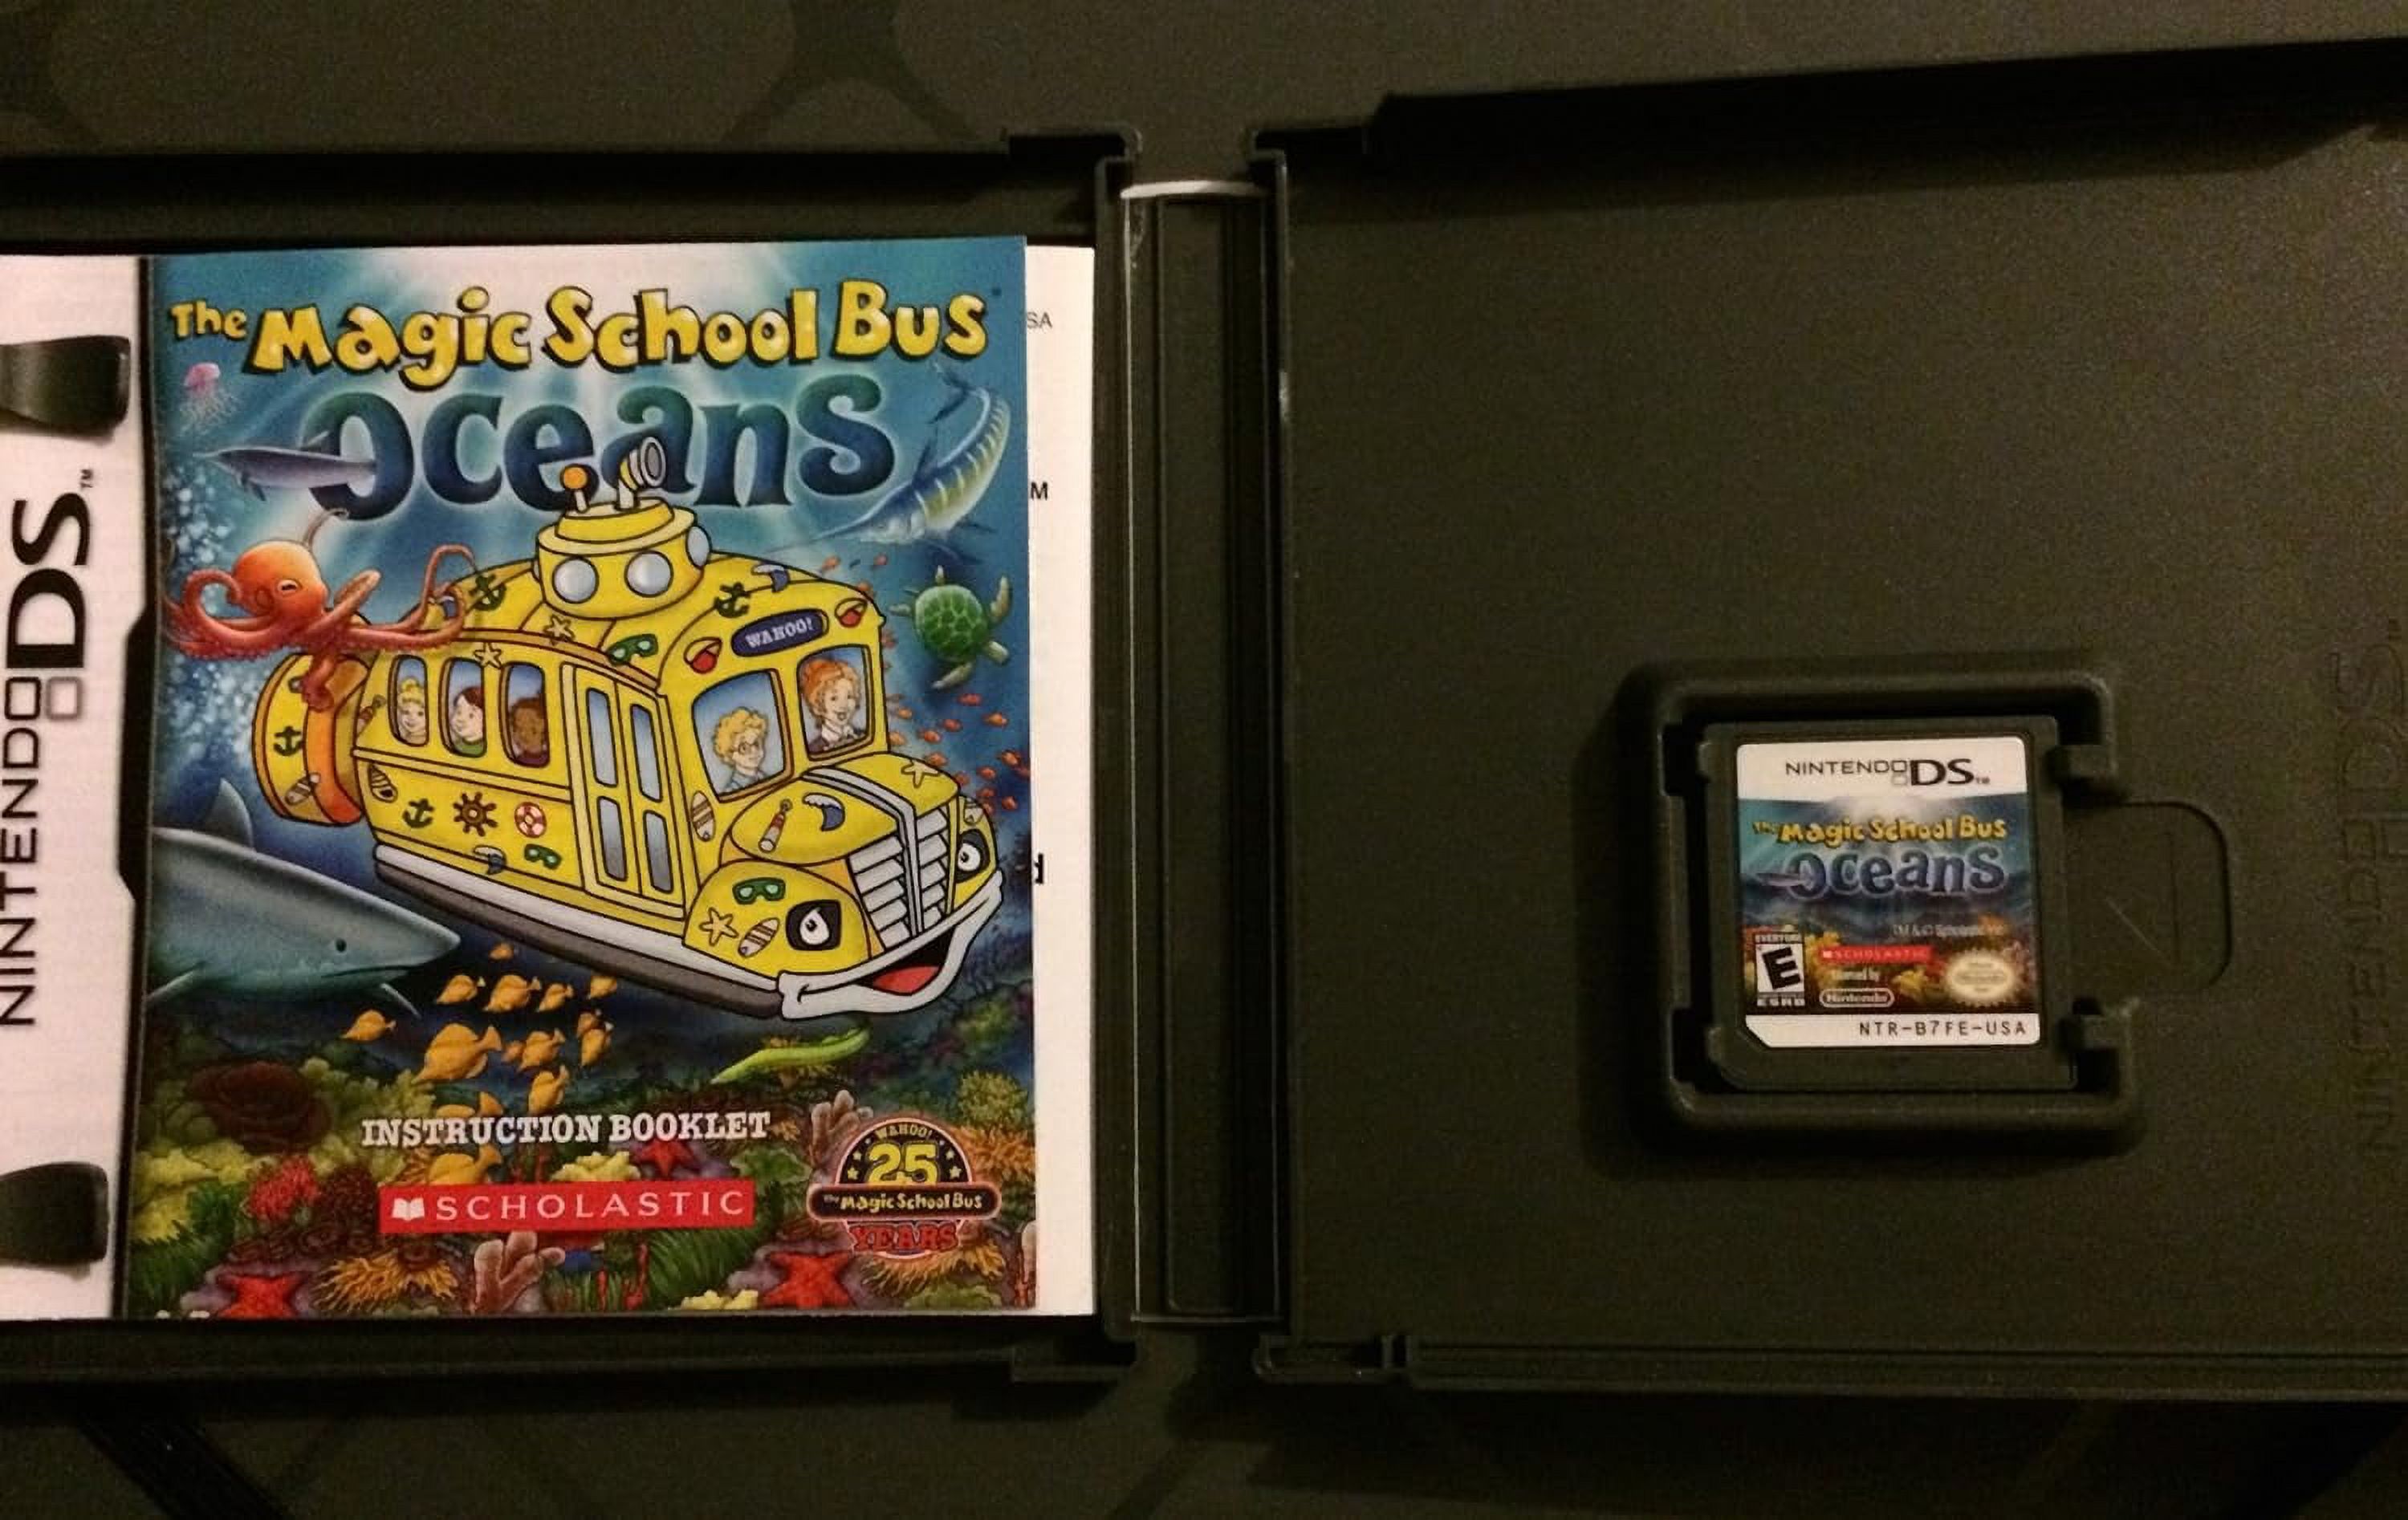 Magic School Bus Oceans - Nintendo DS - image 2 of 2